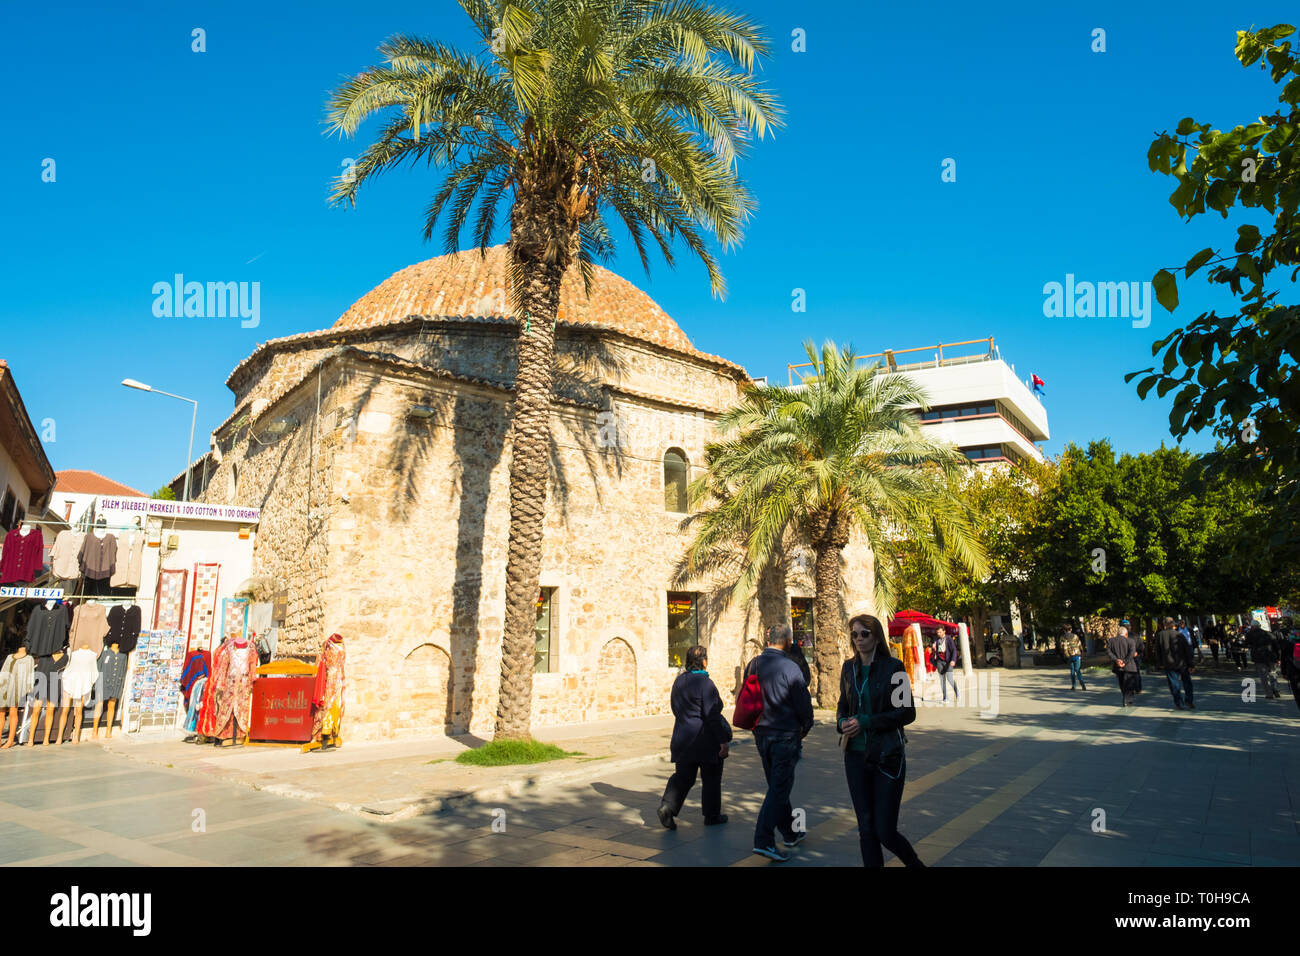 Antalya, Turquie - Novembeer 24, 2017 : Pazari Cagaloglu hammam traditionnel maison sur le chemin de marche des piétons dans la vieille ville de Kaleici. L'horizontale Banque D'Images